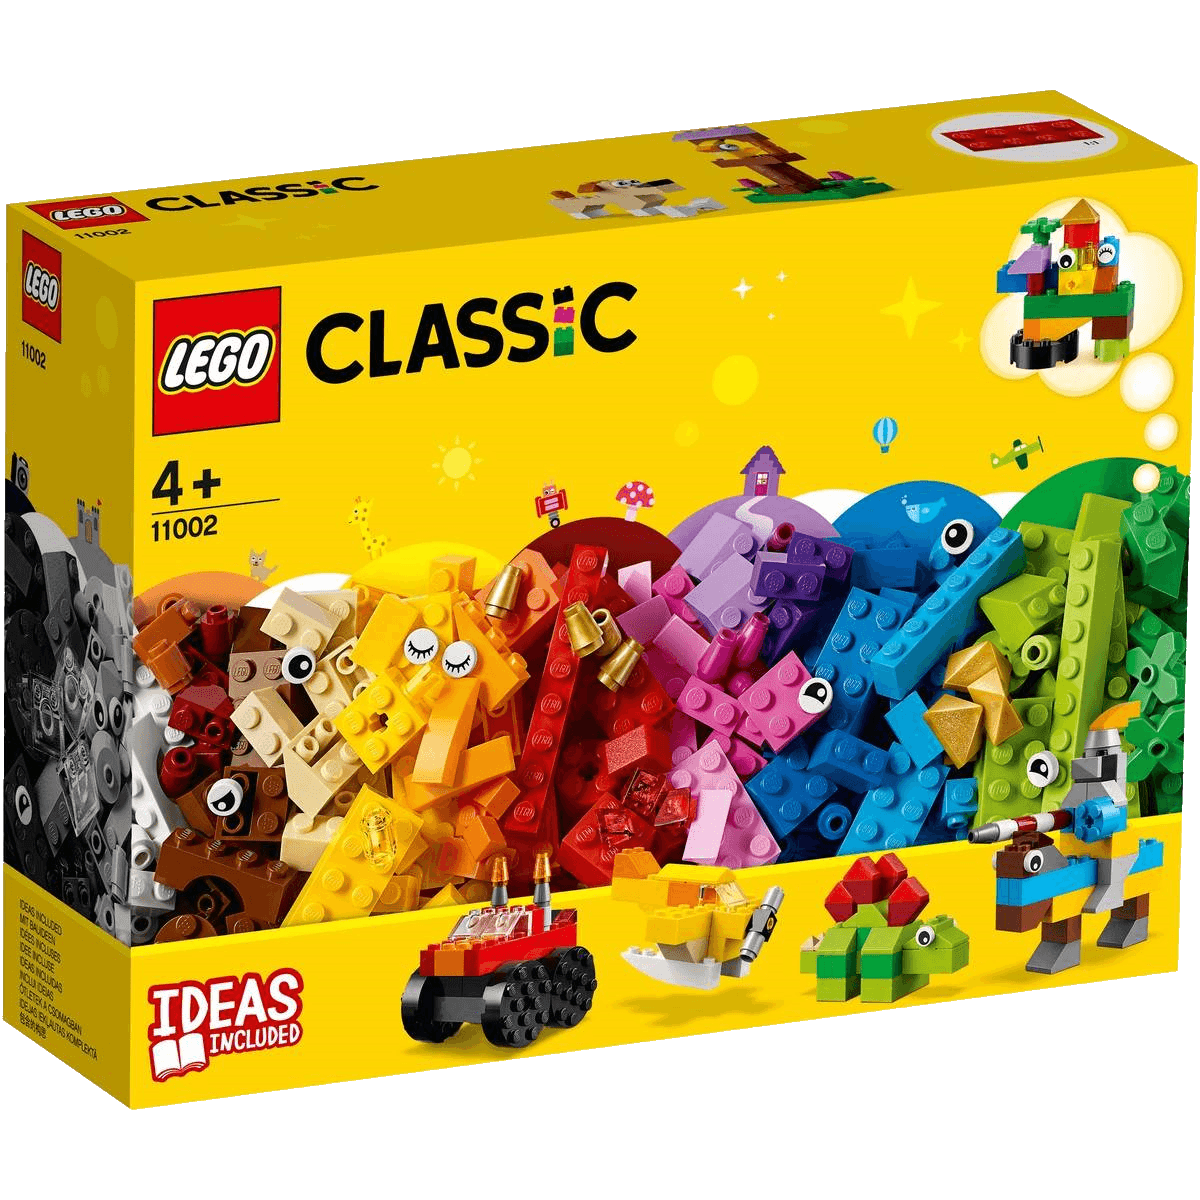 A Lego set